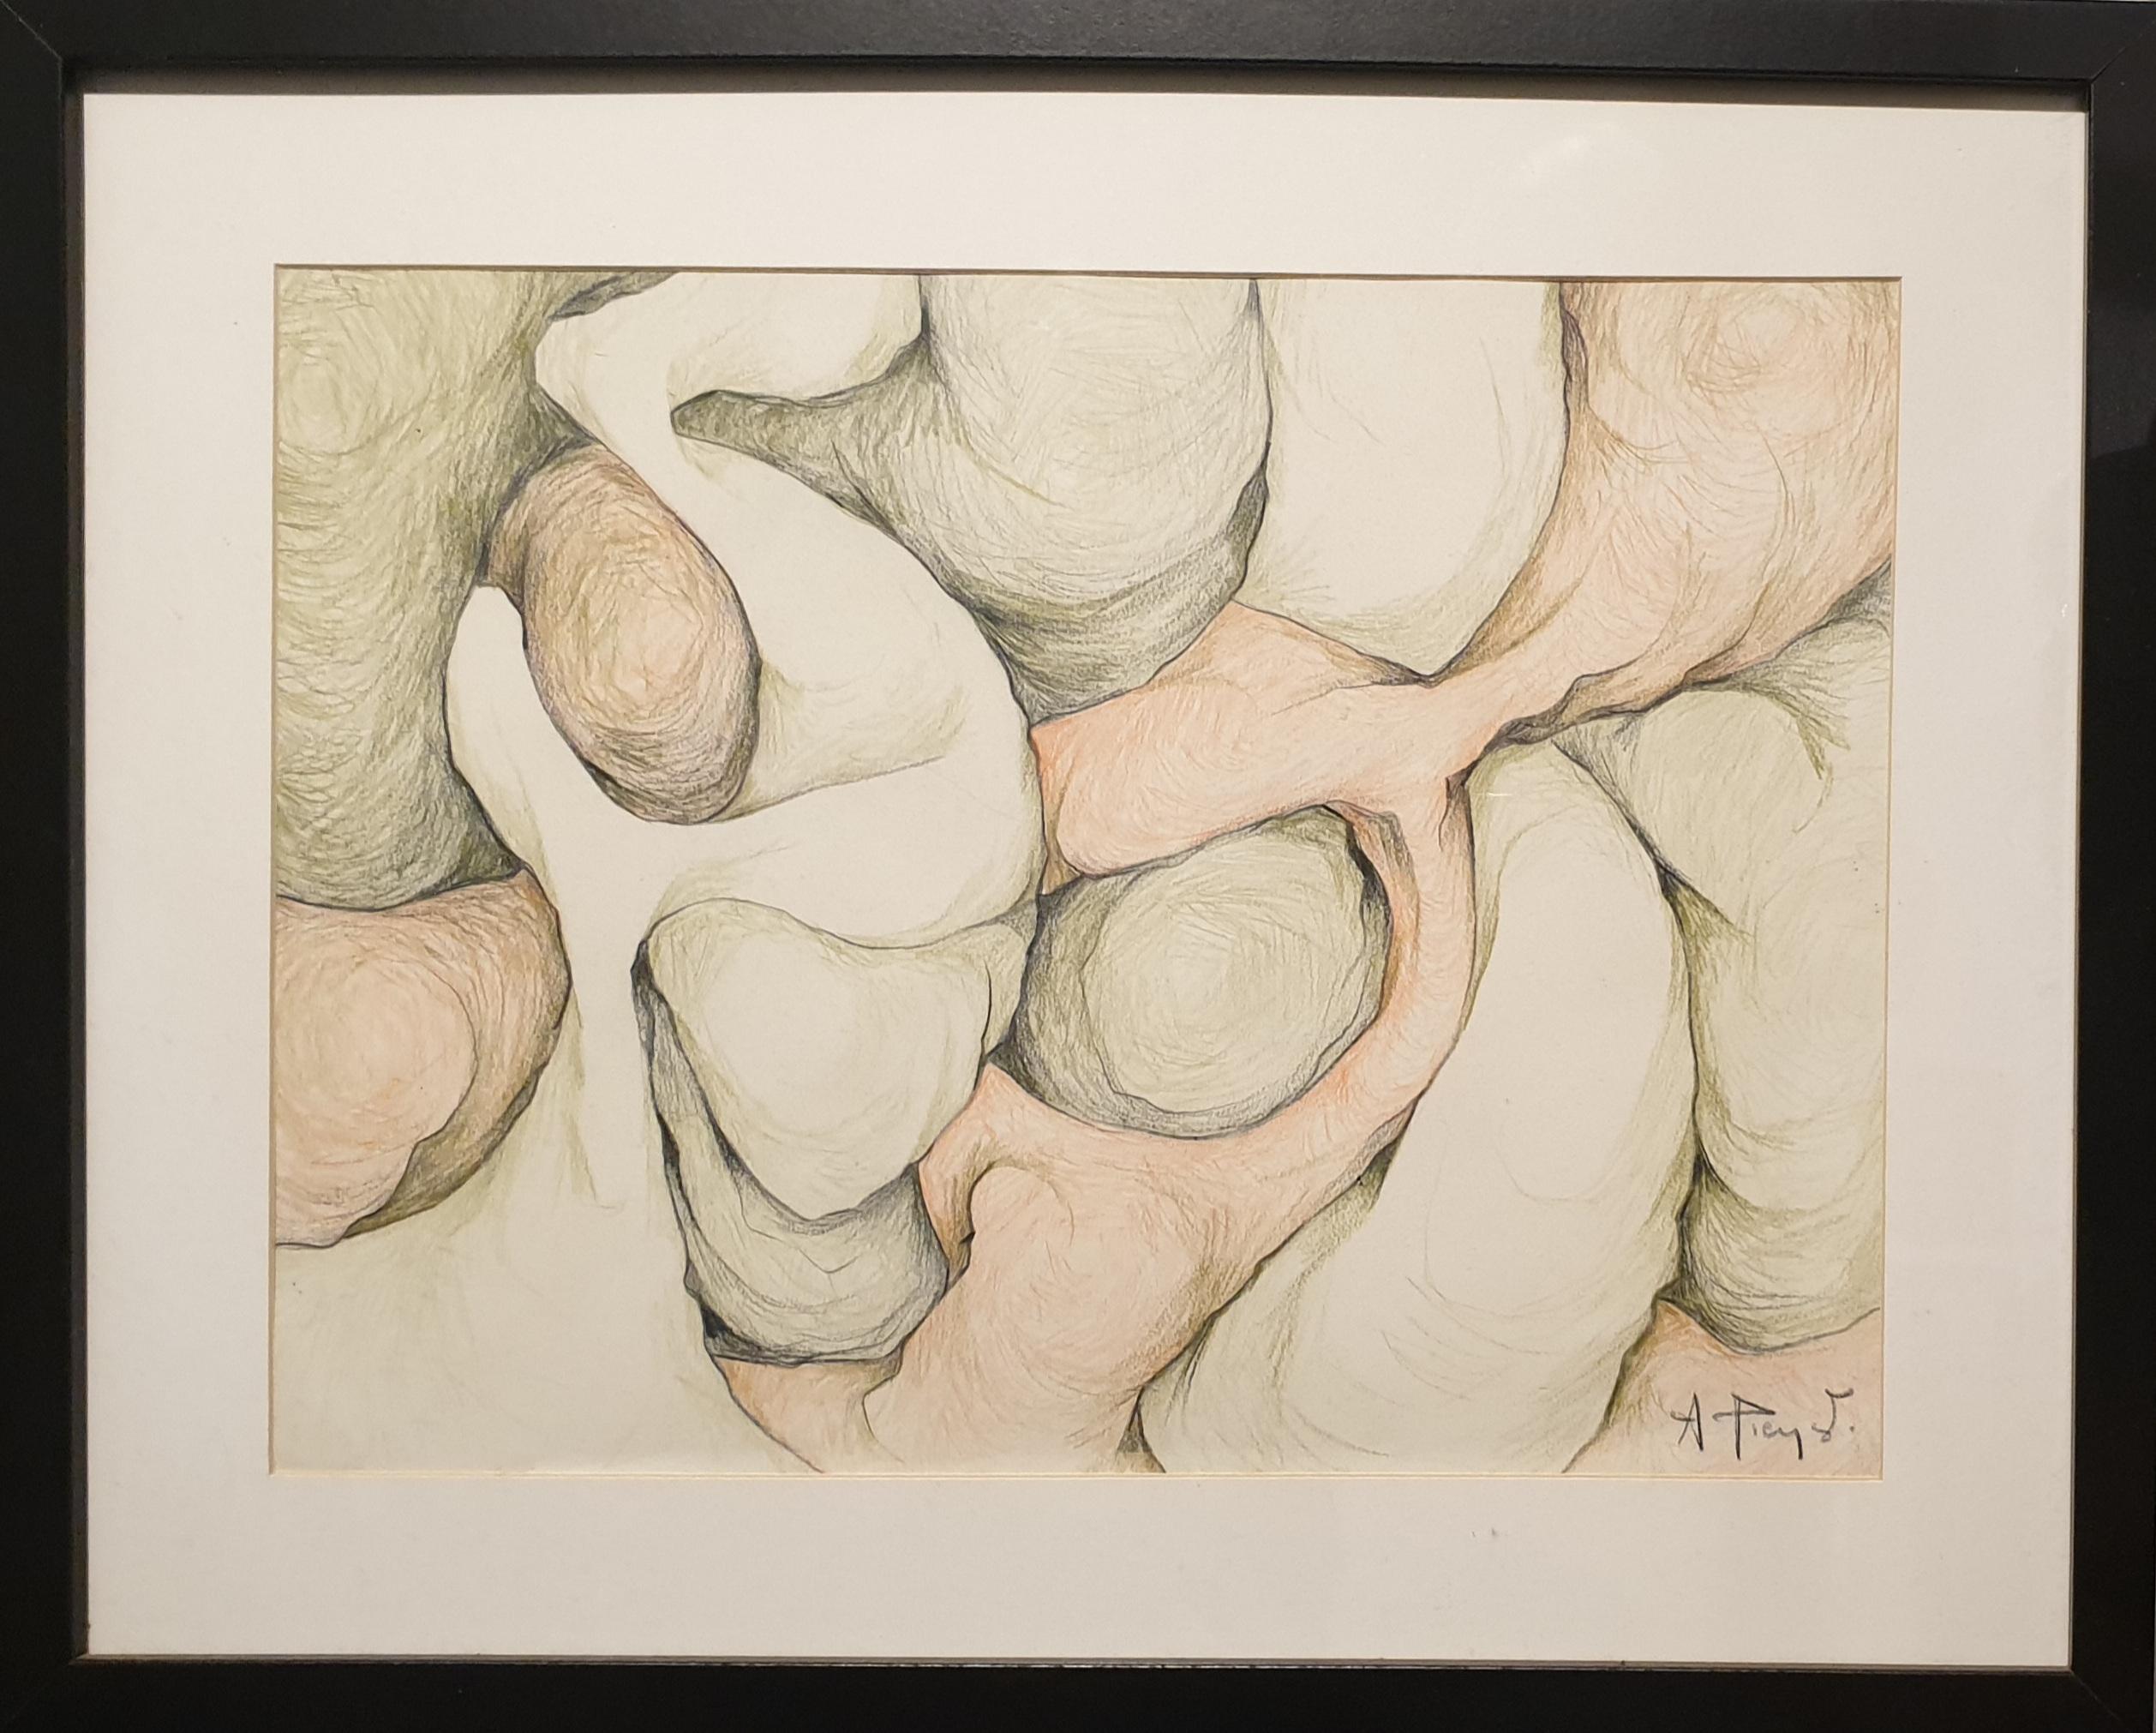 Abstract Drawing André Pierret - Dessin expressionniste abstrait coloré biomorphique au crayon.